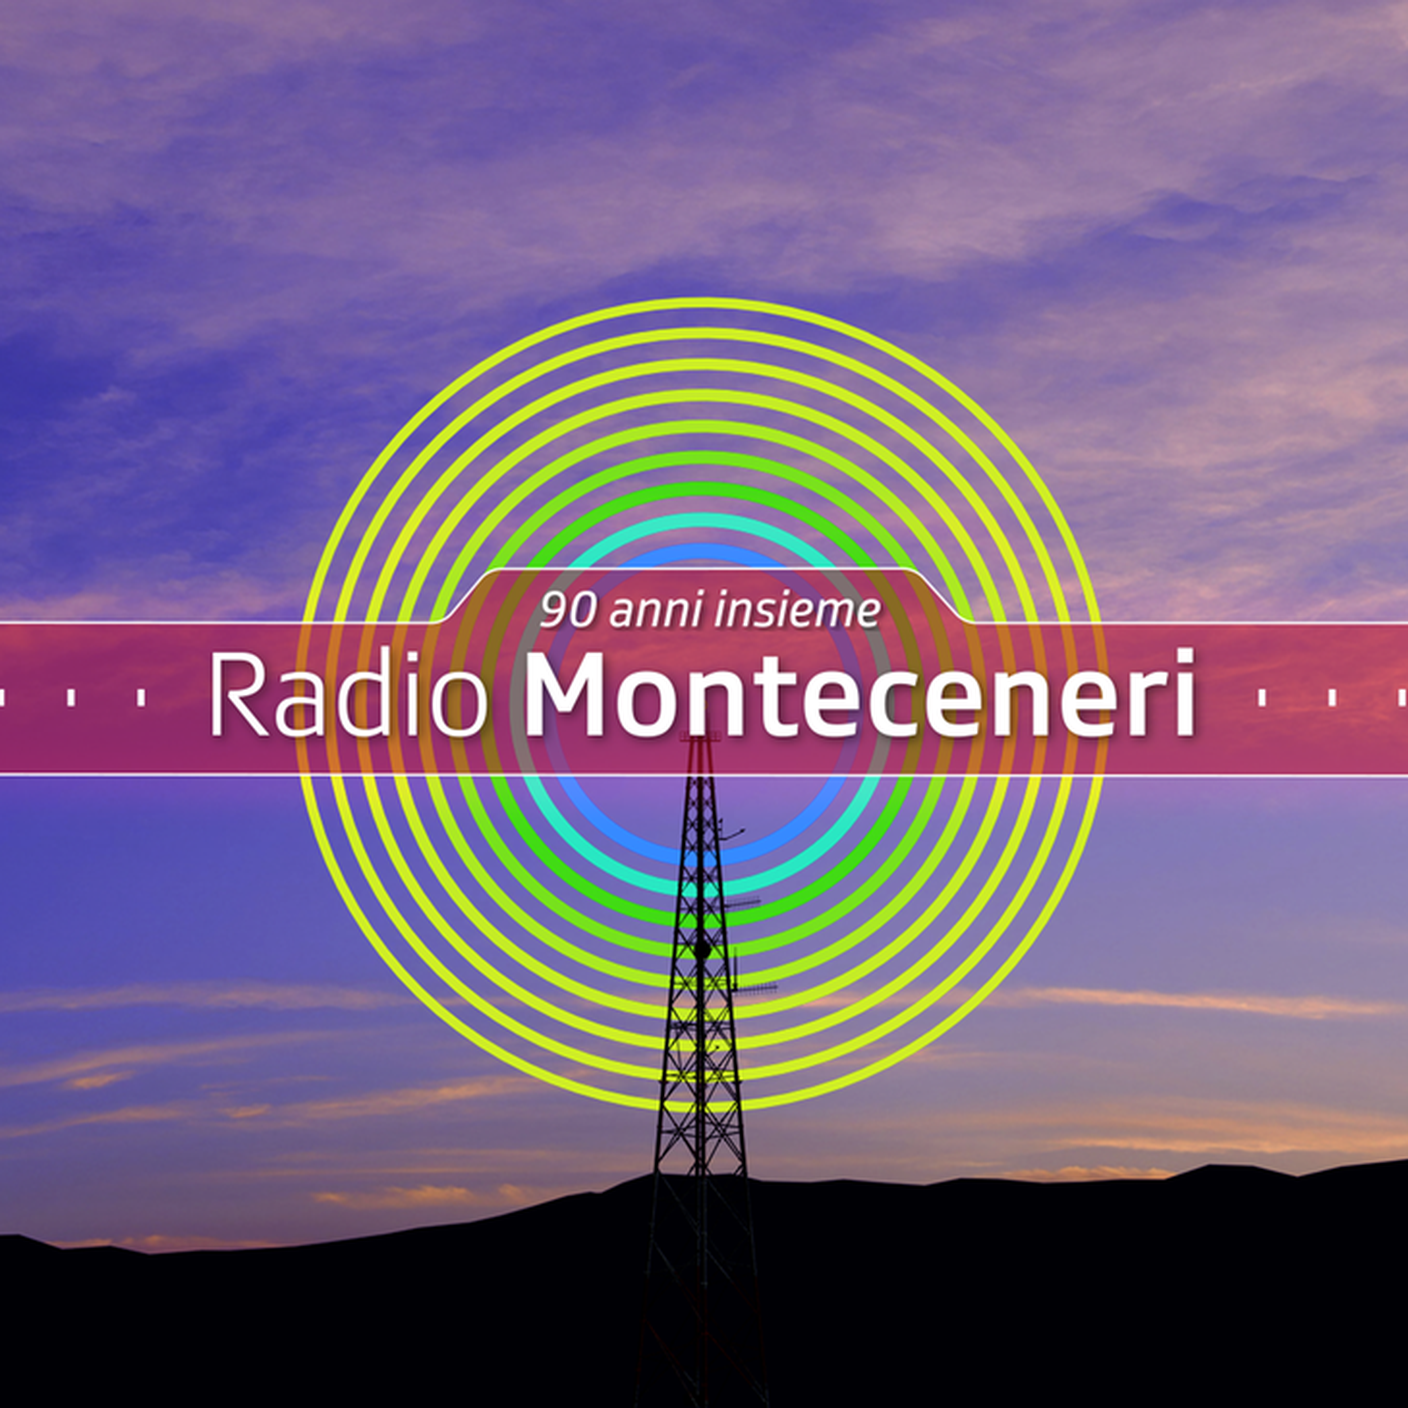 16-9_radio_monteceneri_90_anni_insieme